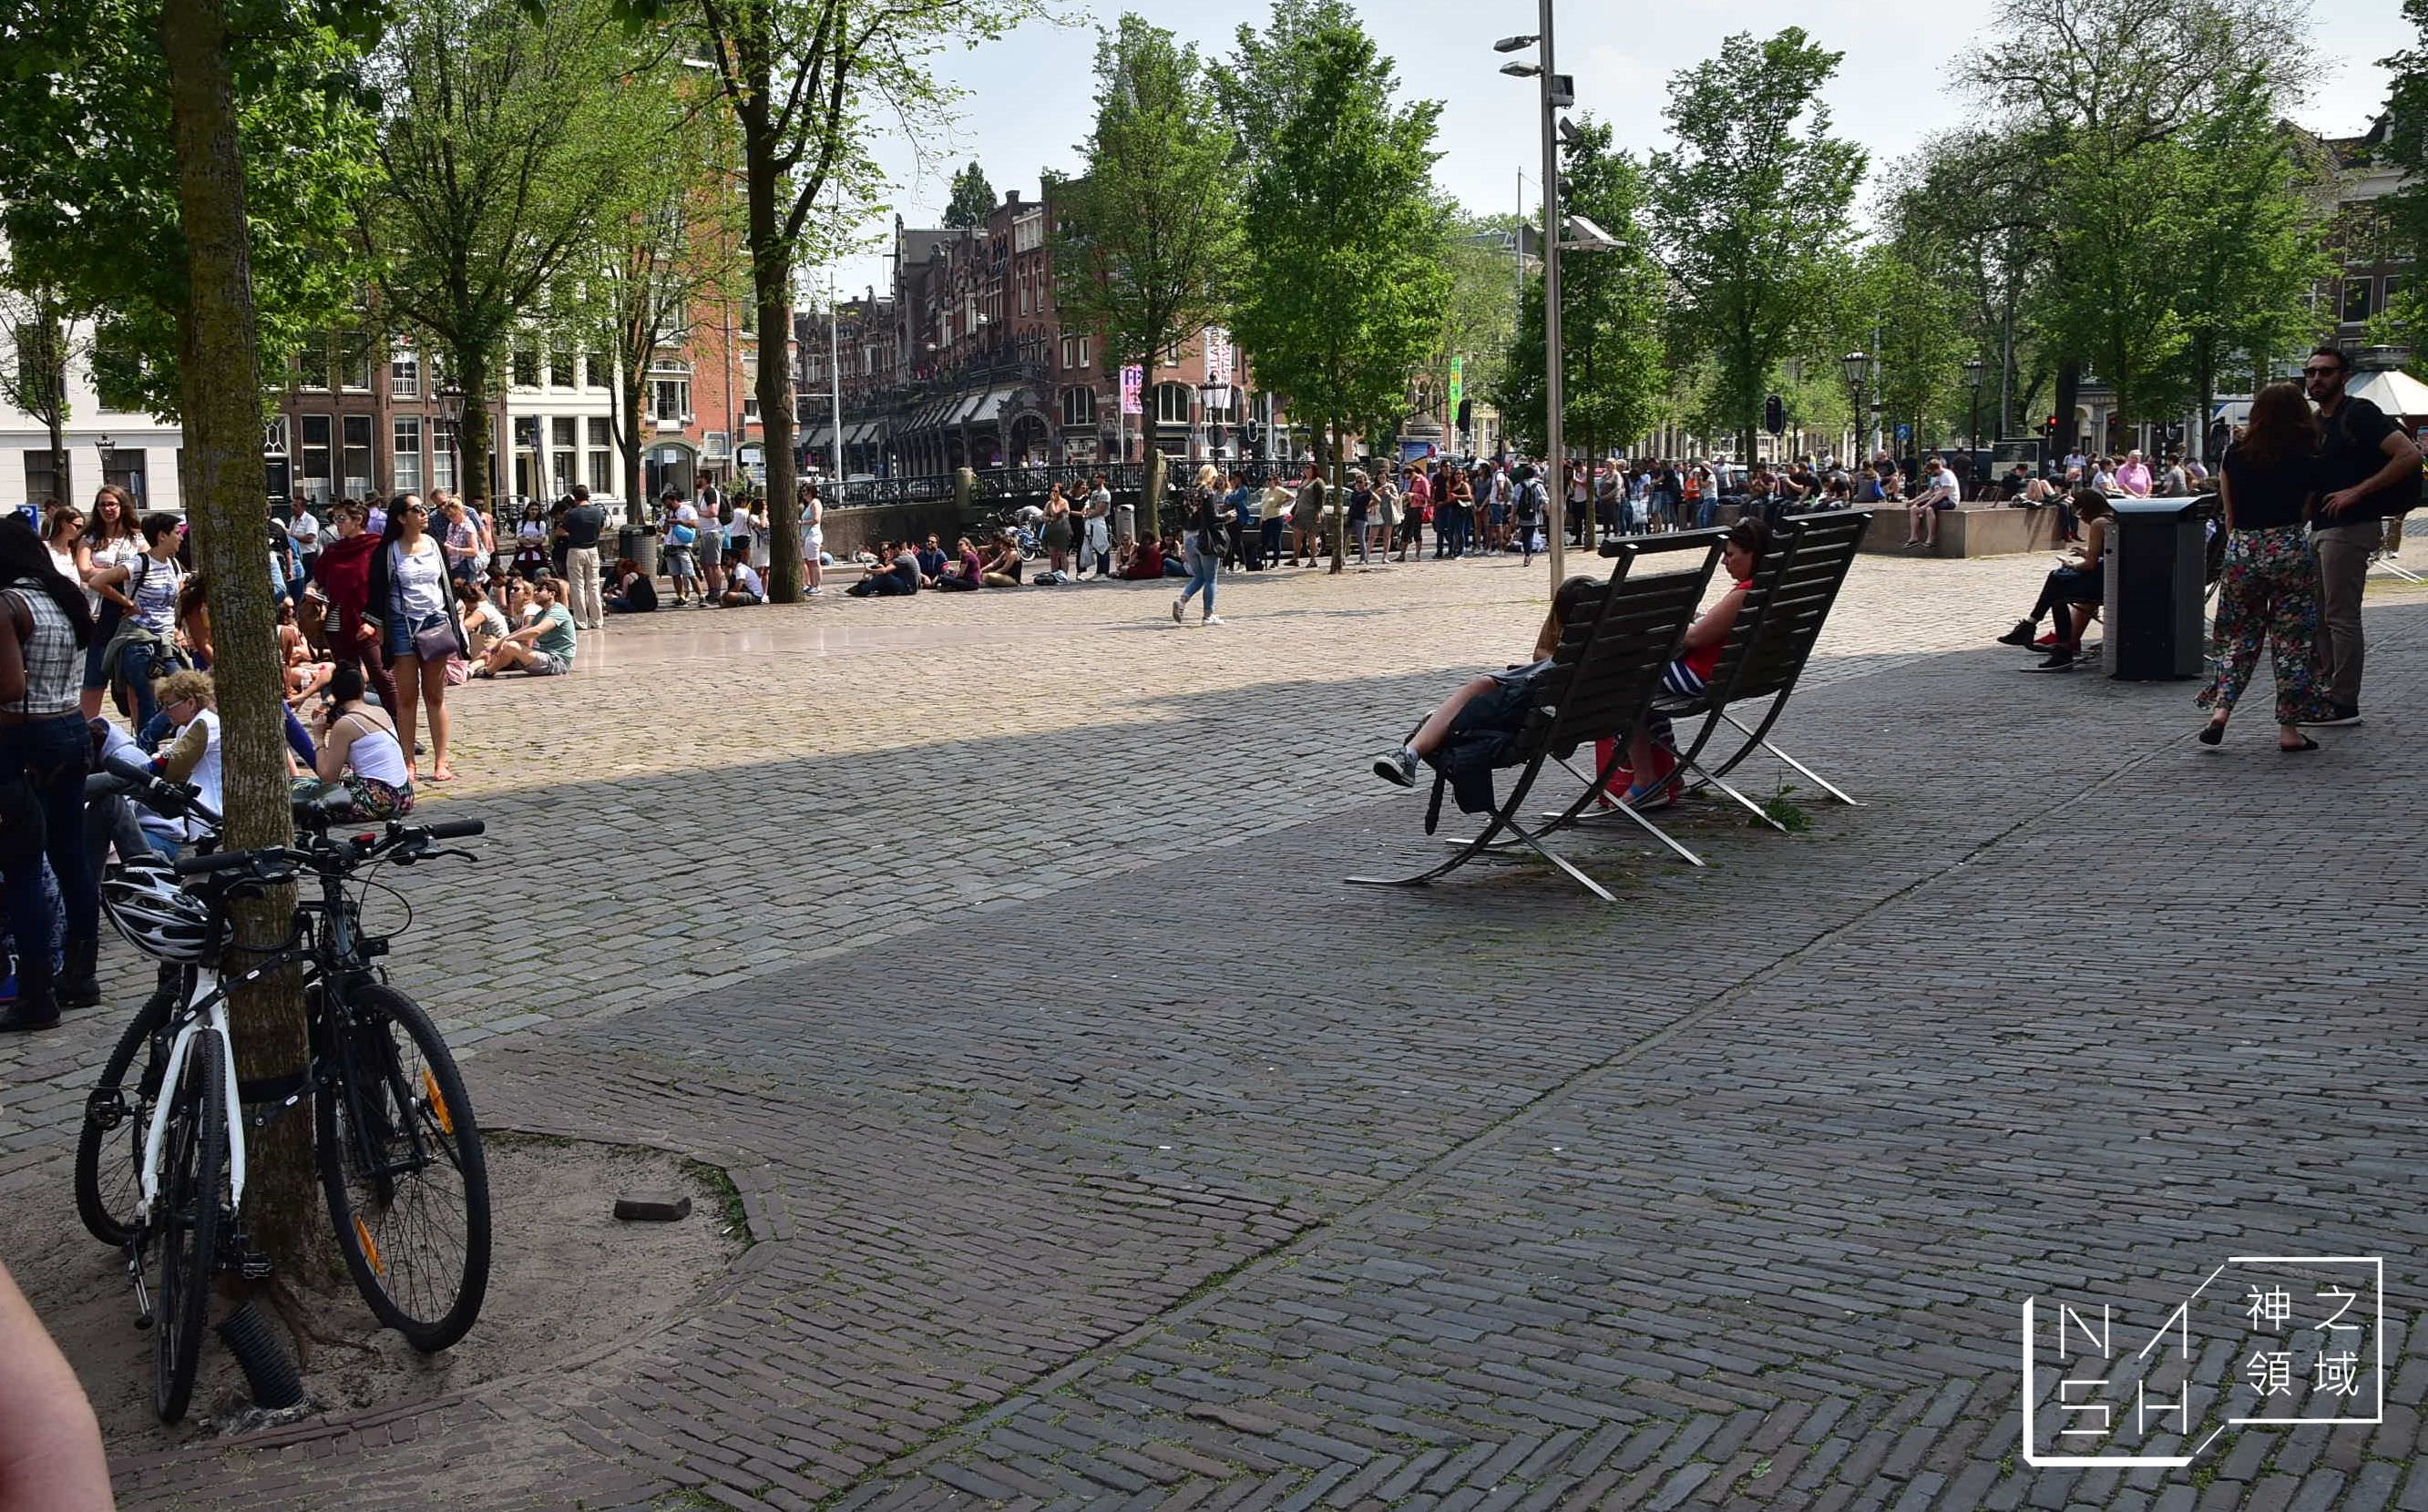 阿姆斯特丹交通,阿姆斯特丹景點,阿姆斯特丹一日遊,荷蘭國家博物館,RIJKS Museum